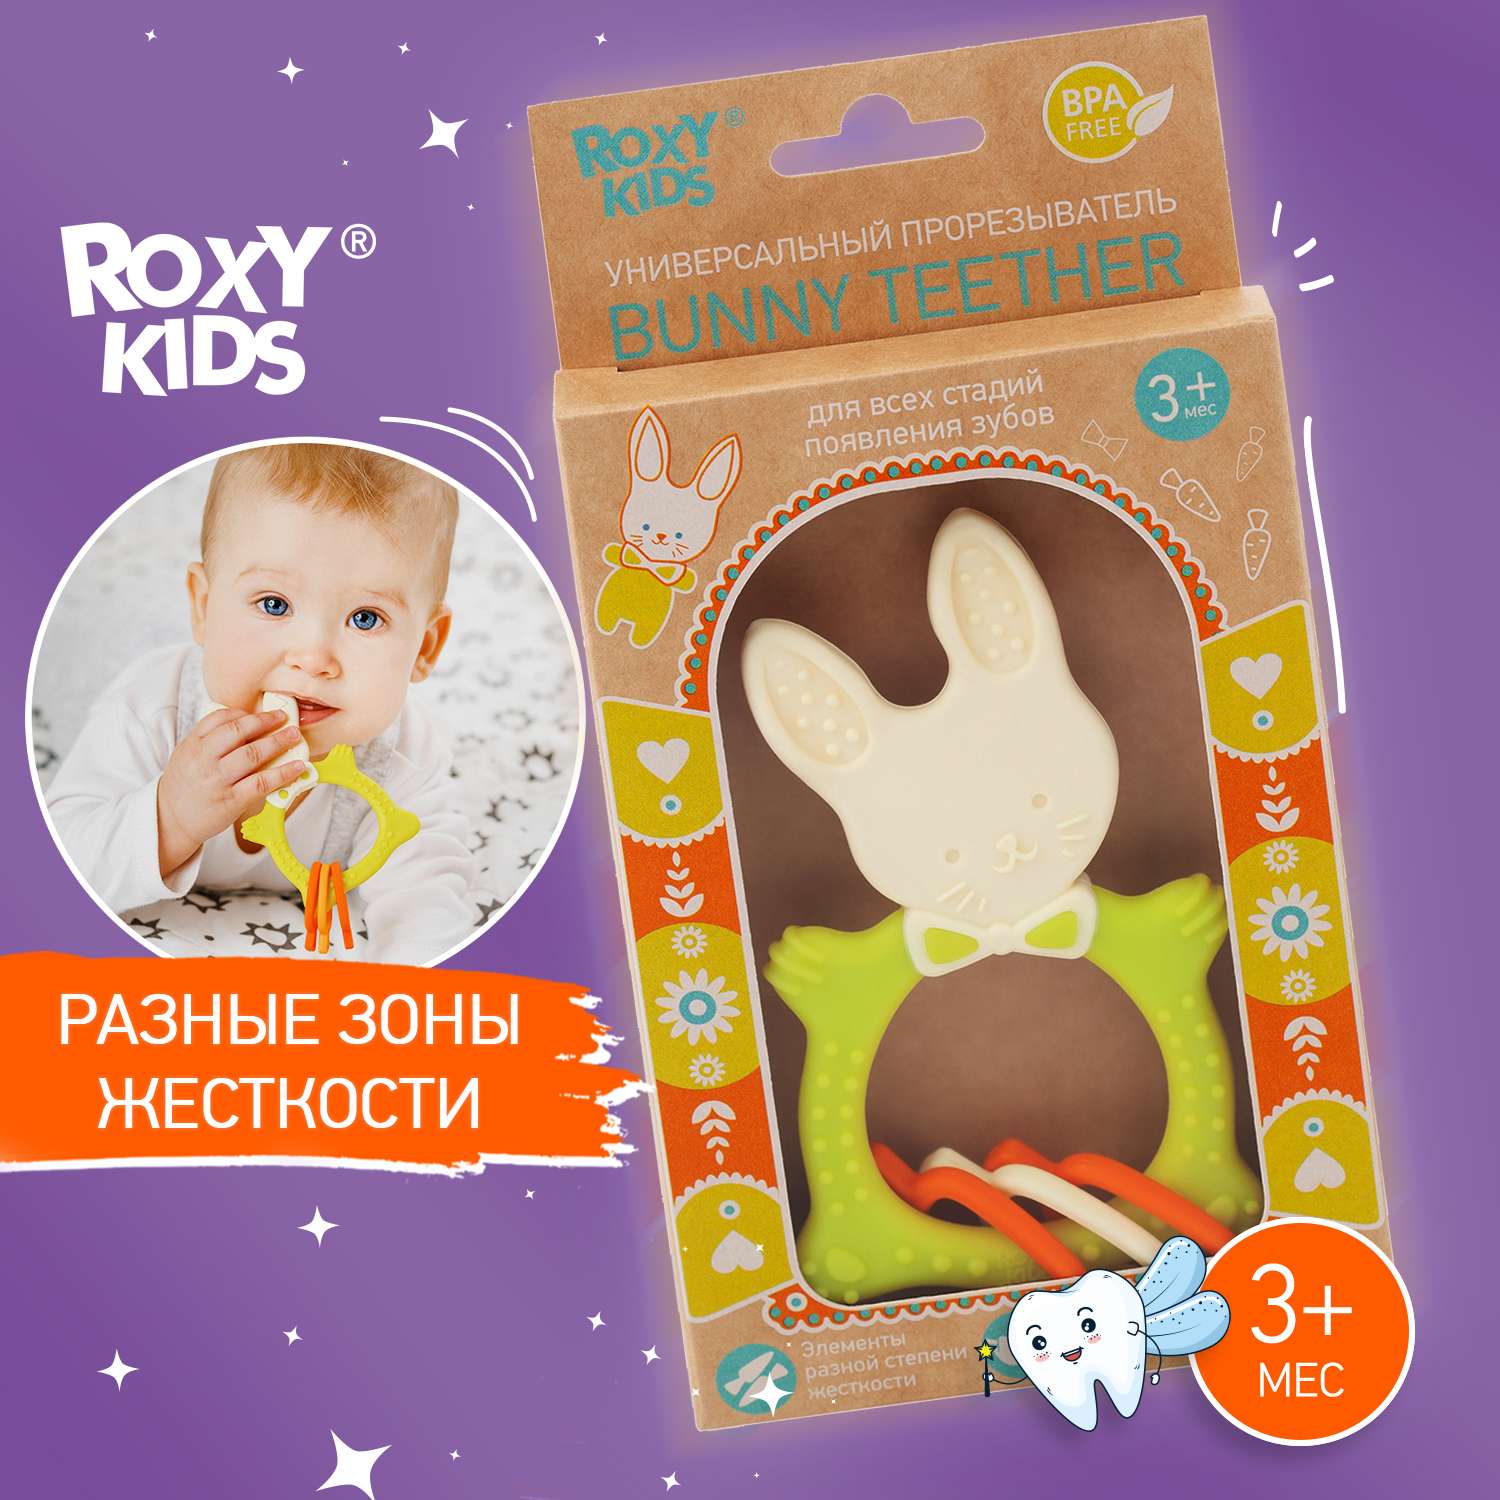 Прорезыватель для зубов ROXY-KIDS Bunny teether цвет зеленый - фото 1